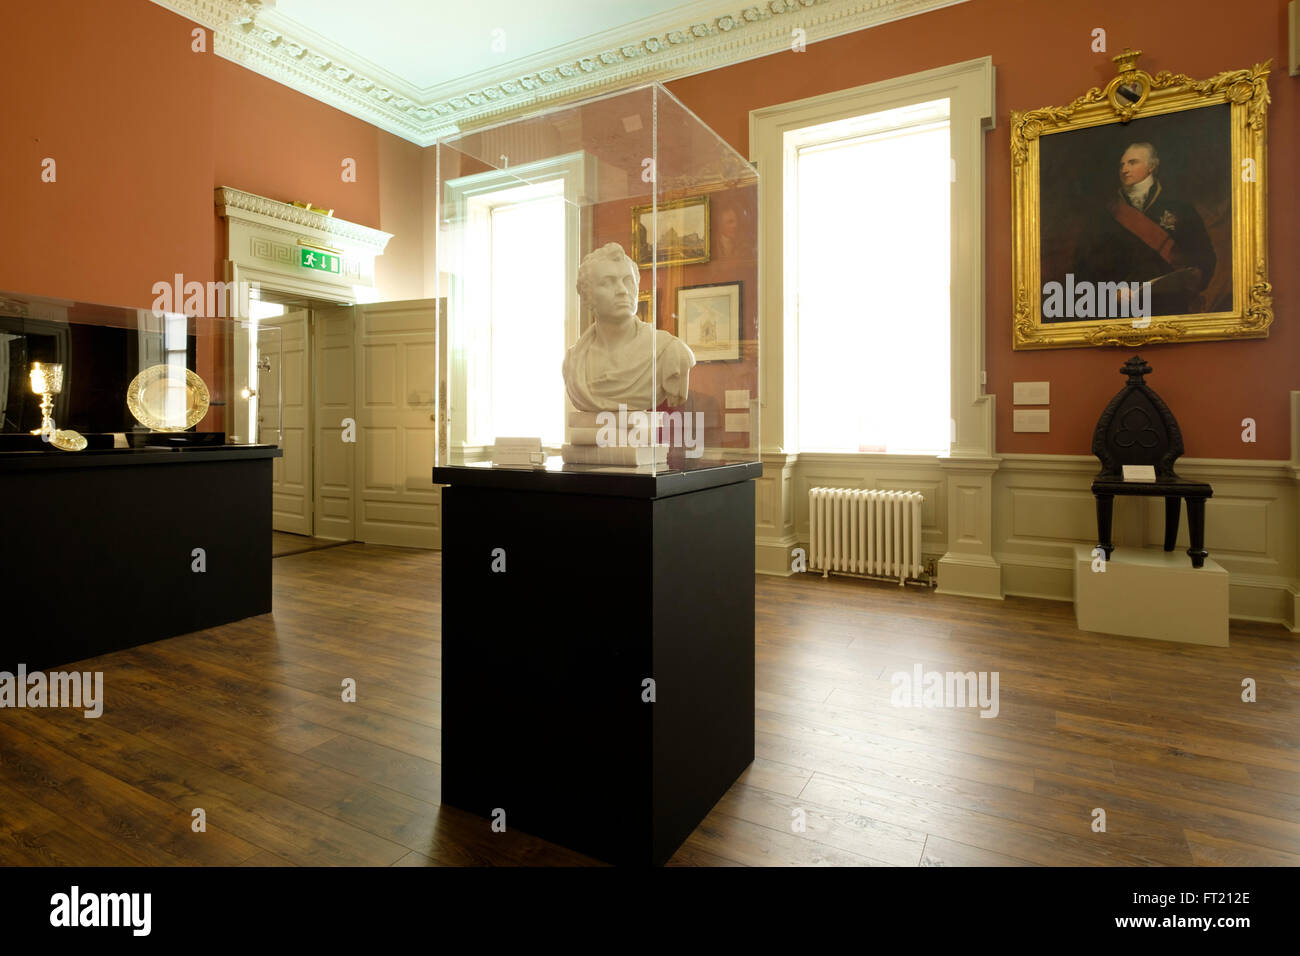 Salle d'exposition de la Dublin Castle, Dublin, République d'Irlande, Europe Banque D'Images